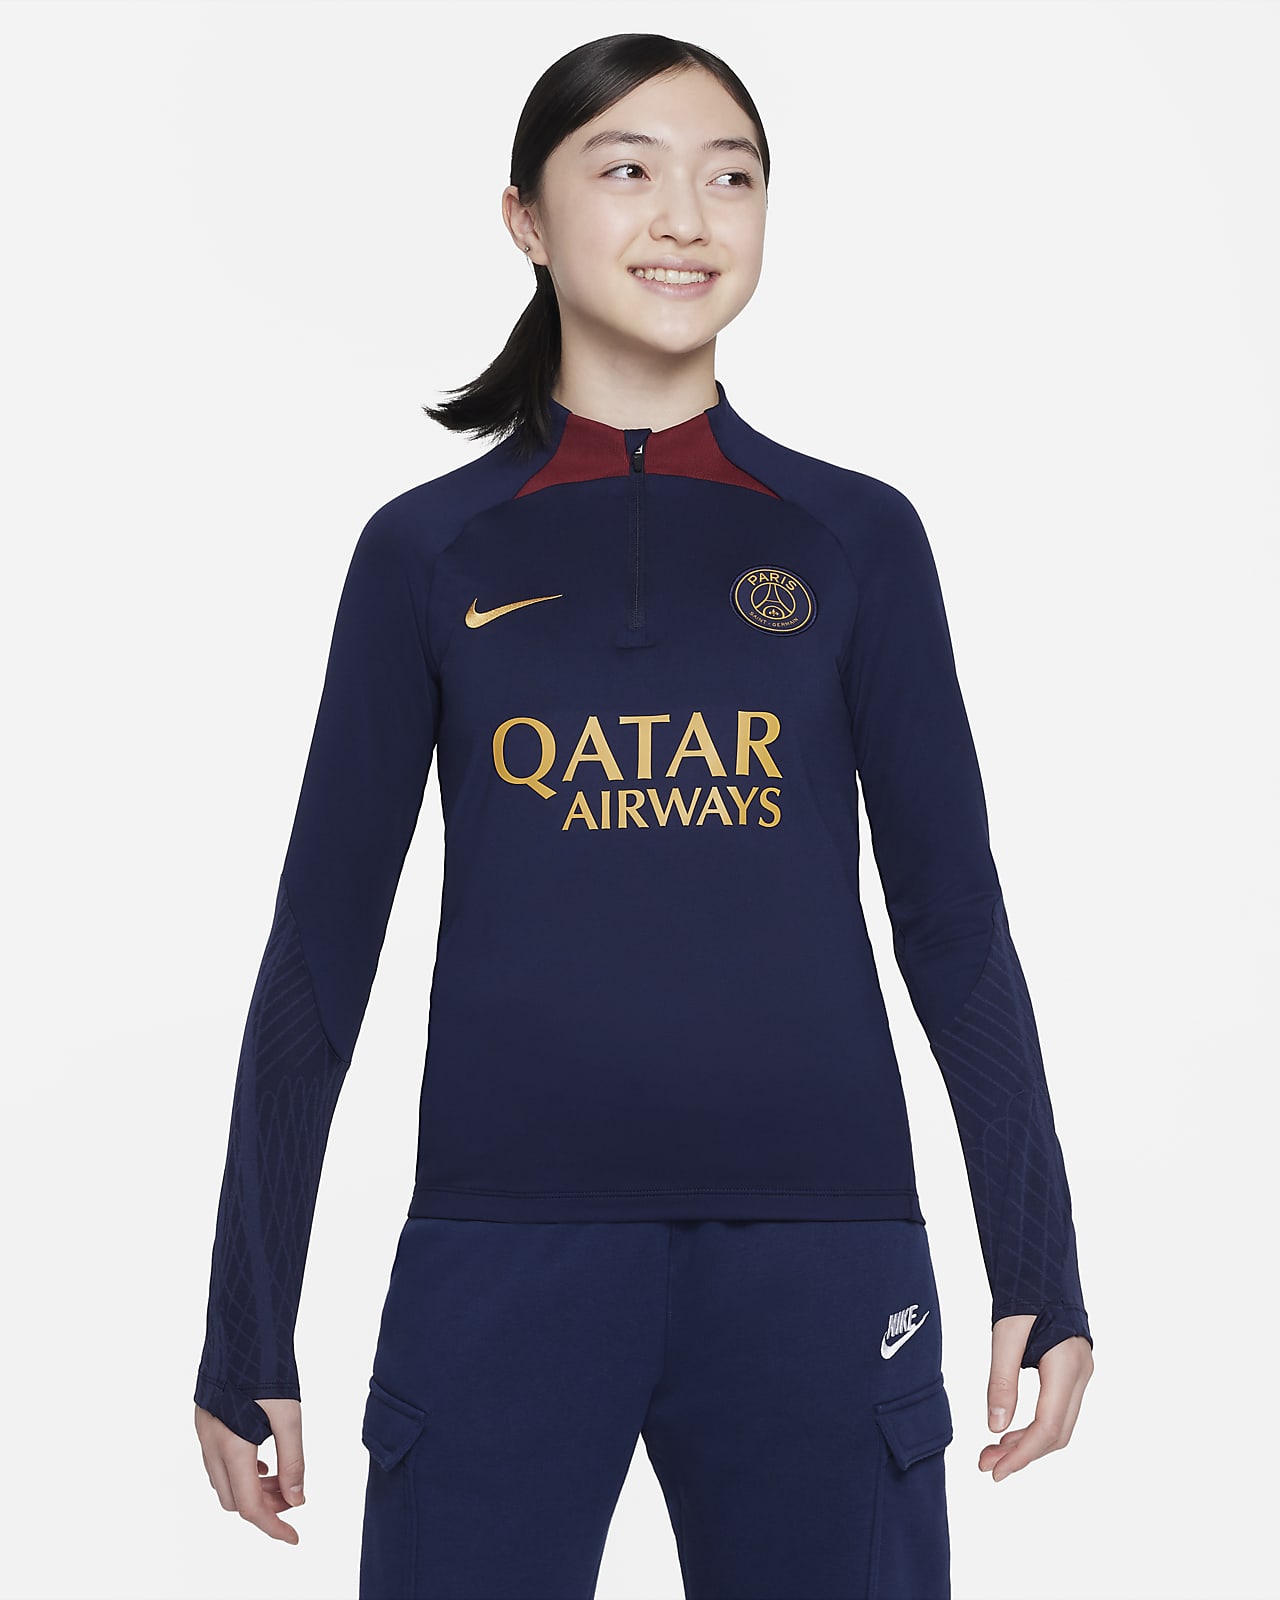 Πλεκτή ποδοσφαιρική μπλούζα προπόνησης Nike Dri-FIT Παρί Σεν Ζερμέν Strike για μεγάλα παιδιά